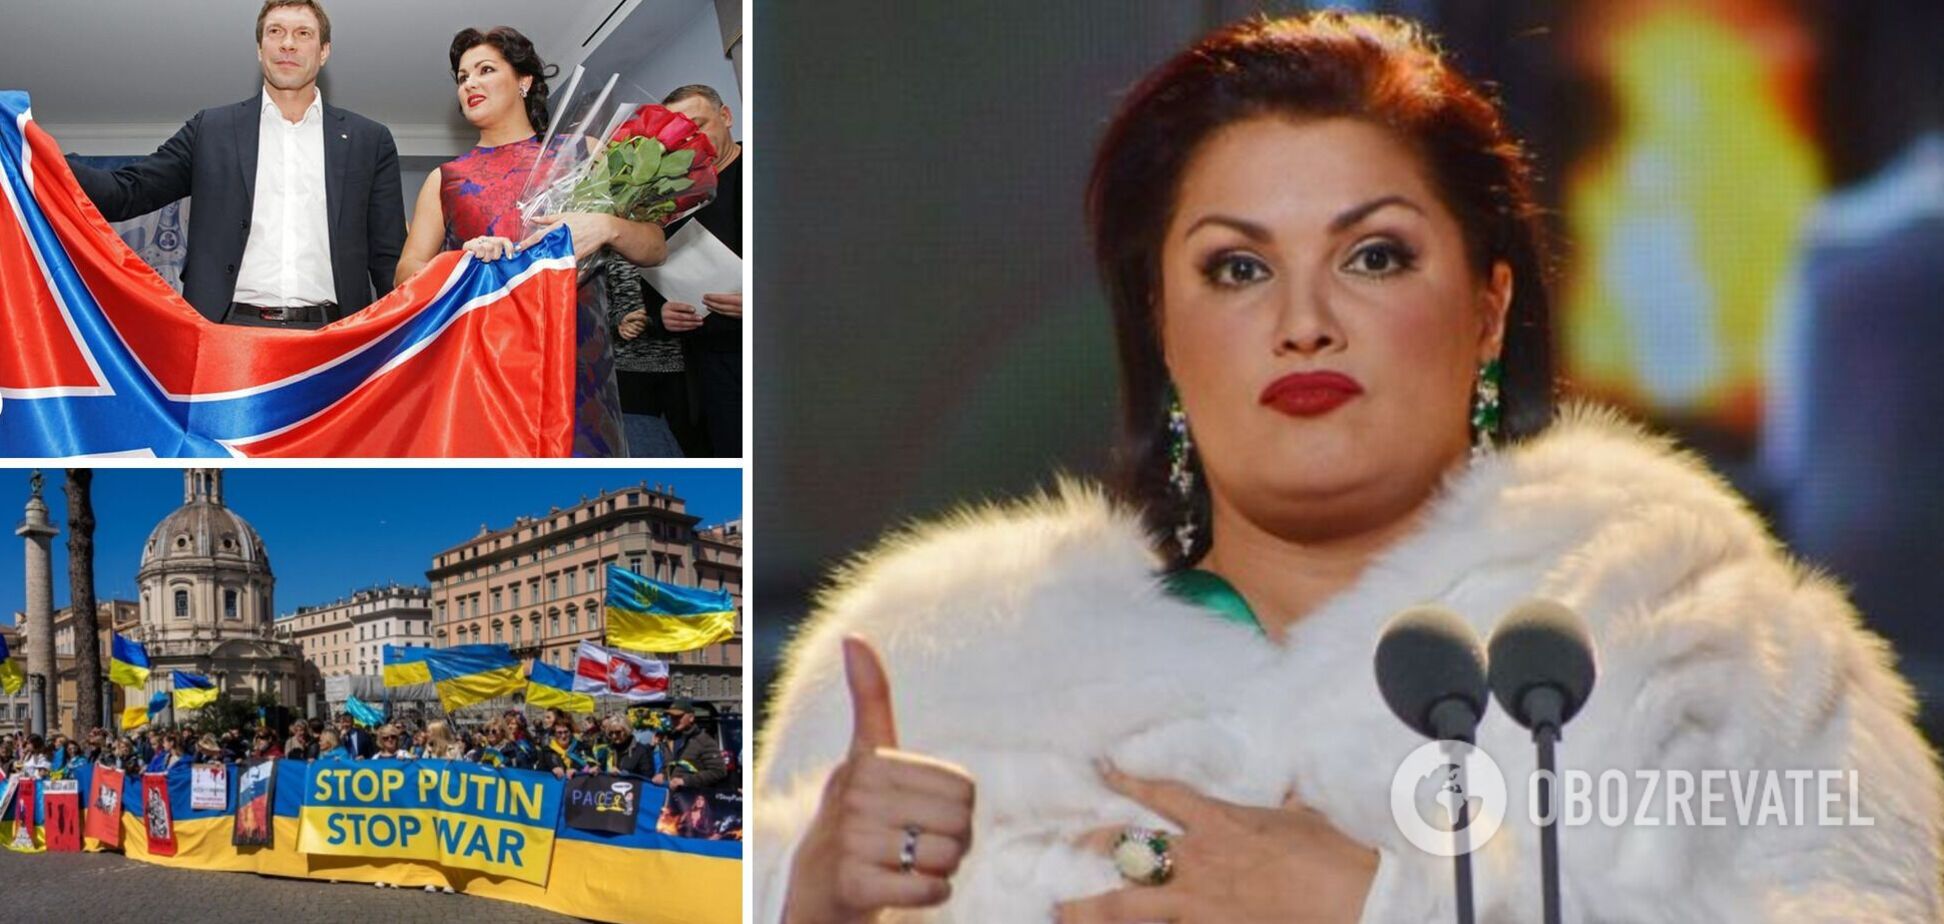 Подсанкционная певица Нетребко намерена выступить в Италии: украинцы готовят пикеты